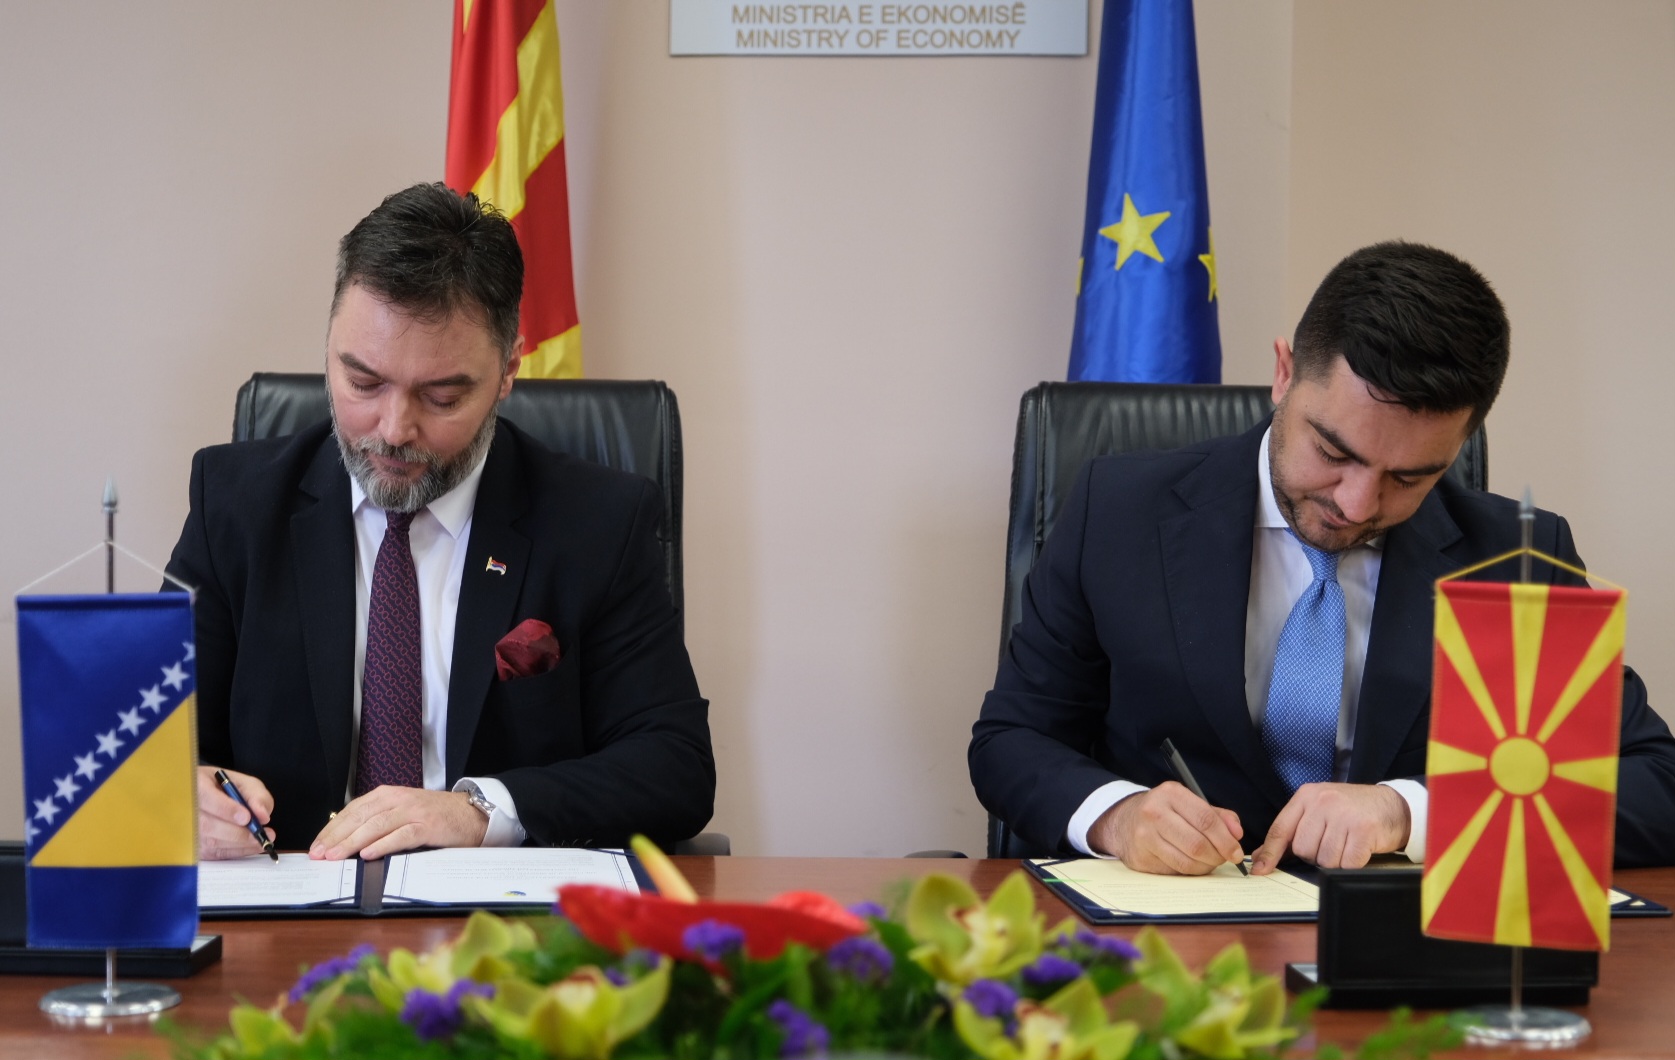 Picture for Министри Kошарац и Бектеши потписали Споразум о економској сарадњи и Споразум о сарадњи у области туризма између БиХ и Сјеверне Македоније